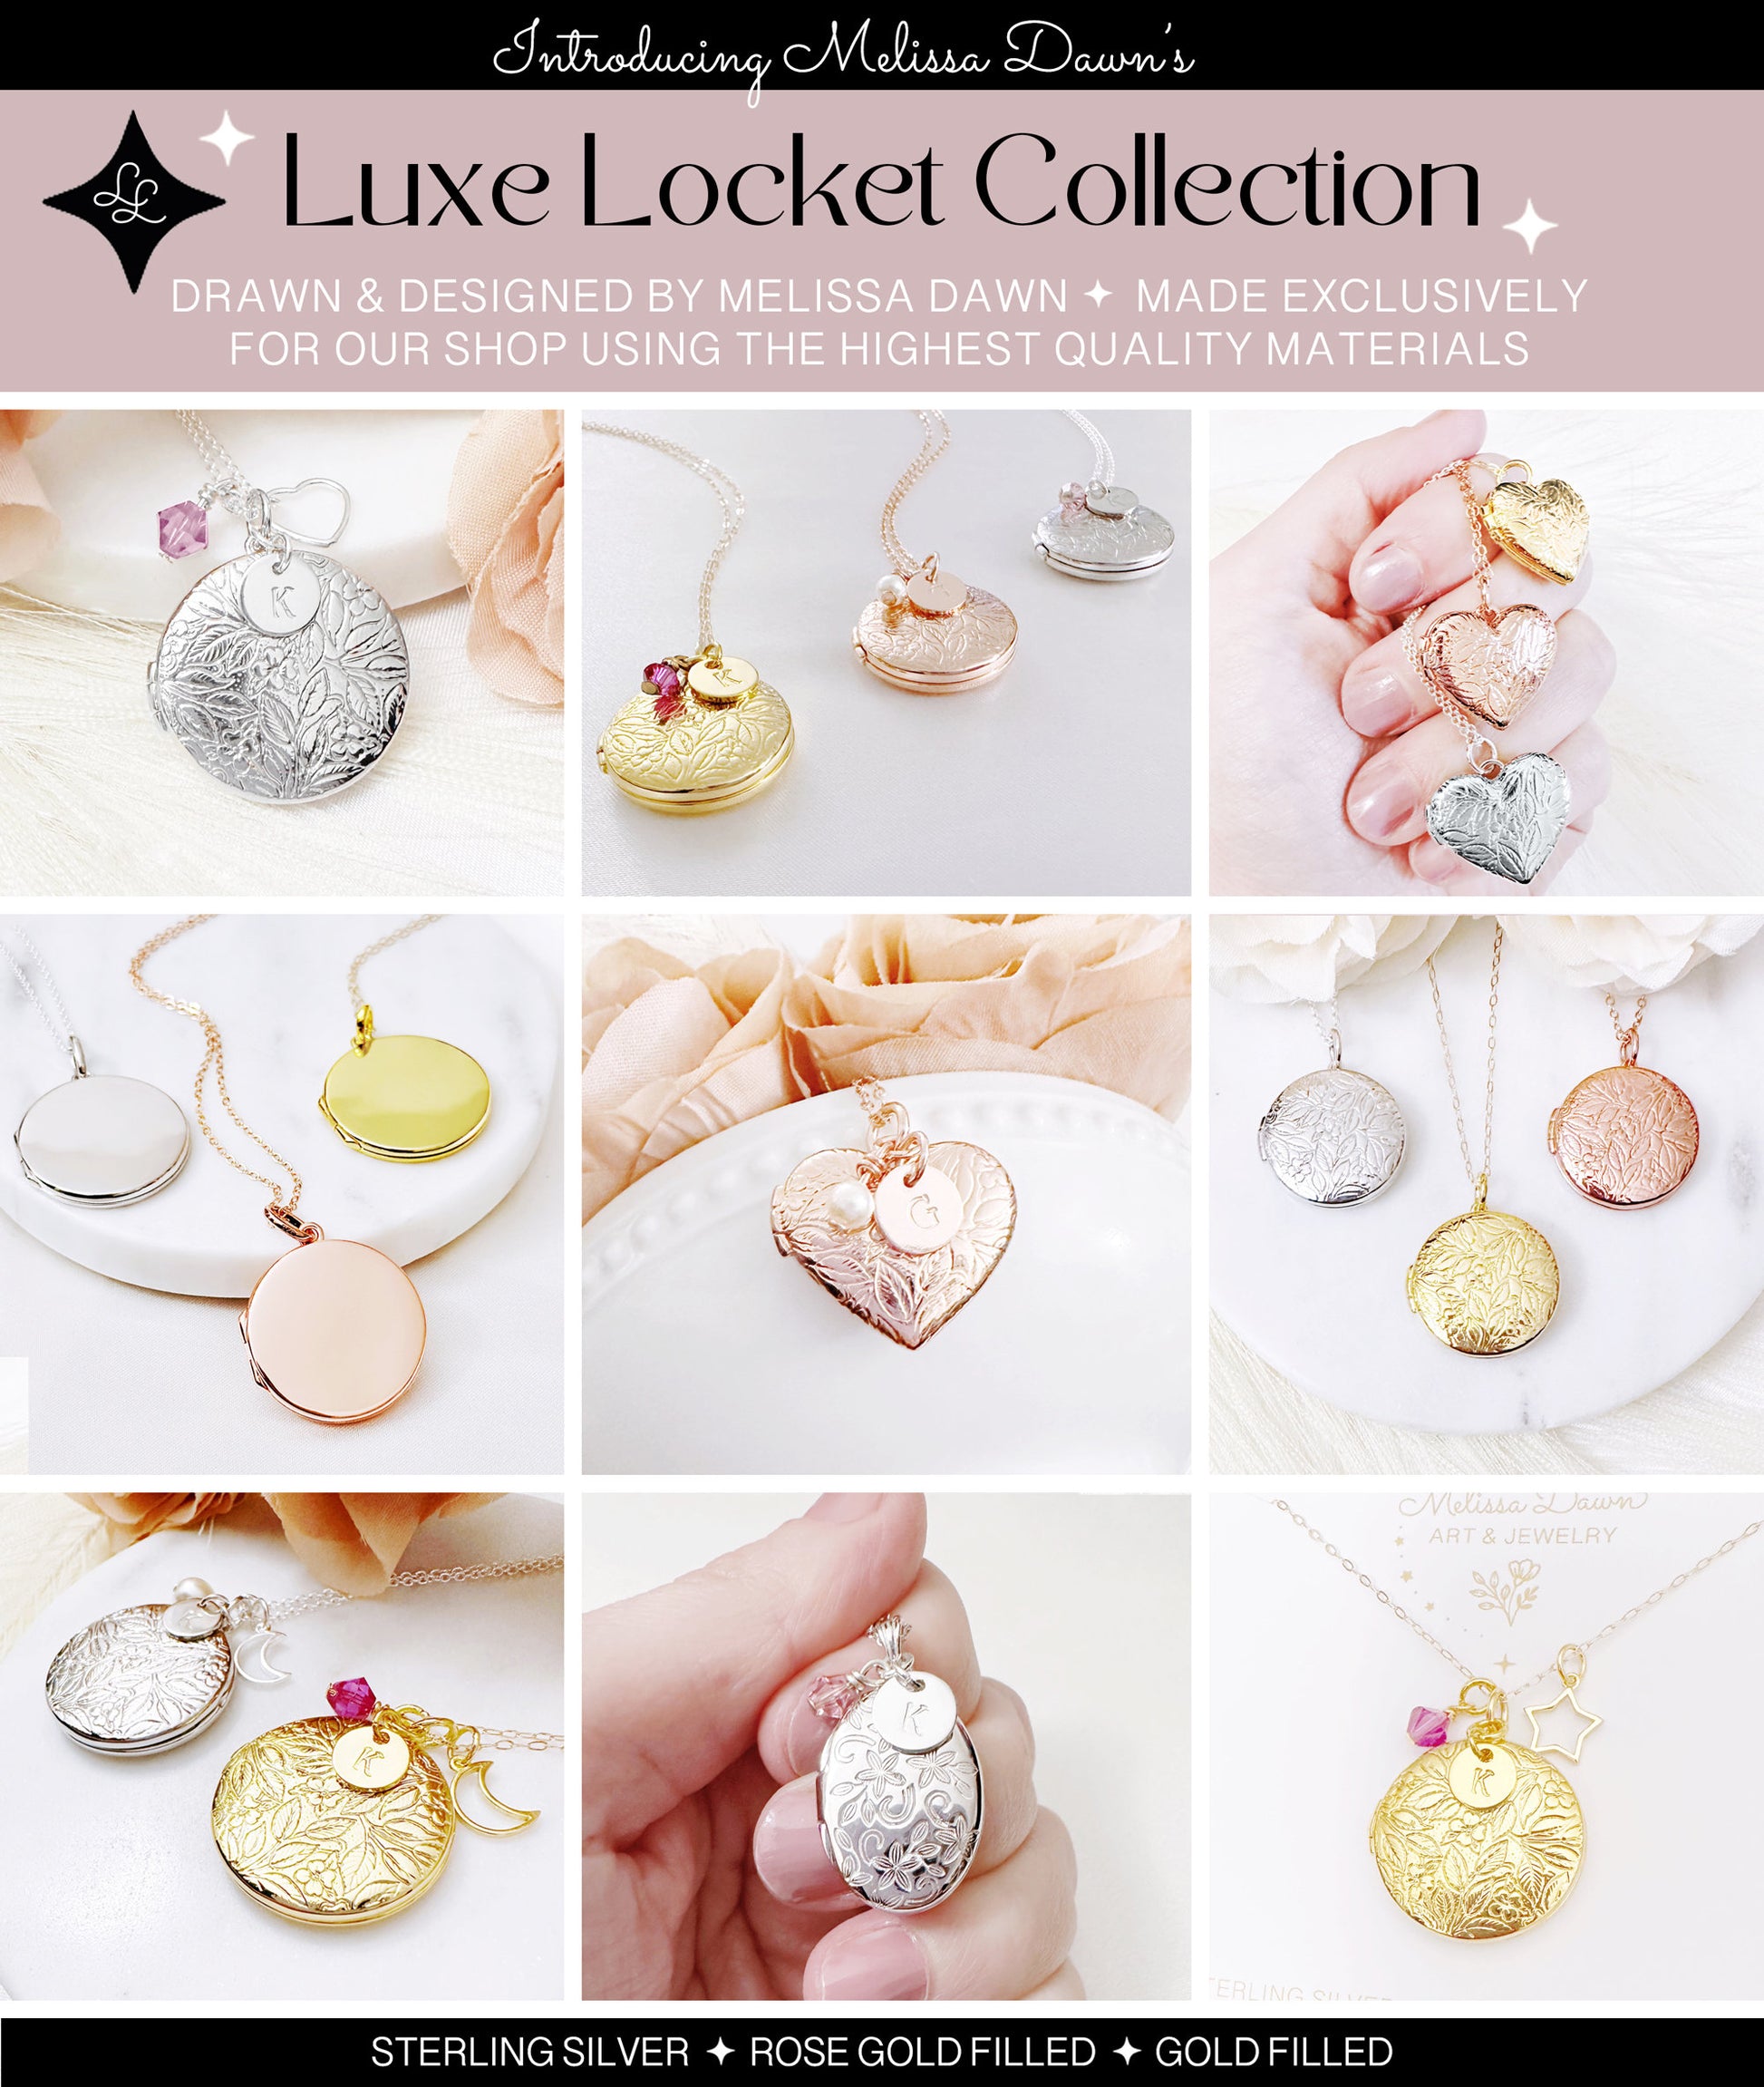 Heart Locket / Heart Shaped Locket / Flower Locket / Locket Necklace/ Sterling Silver Locket/ Locket Necklace / Custom Locket / Photo Locket